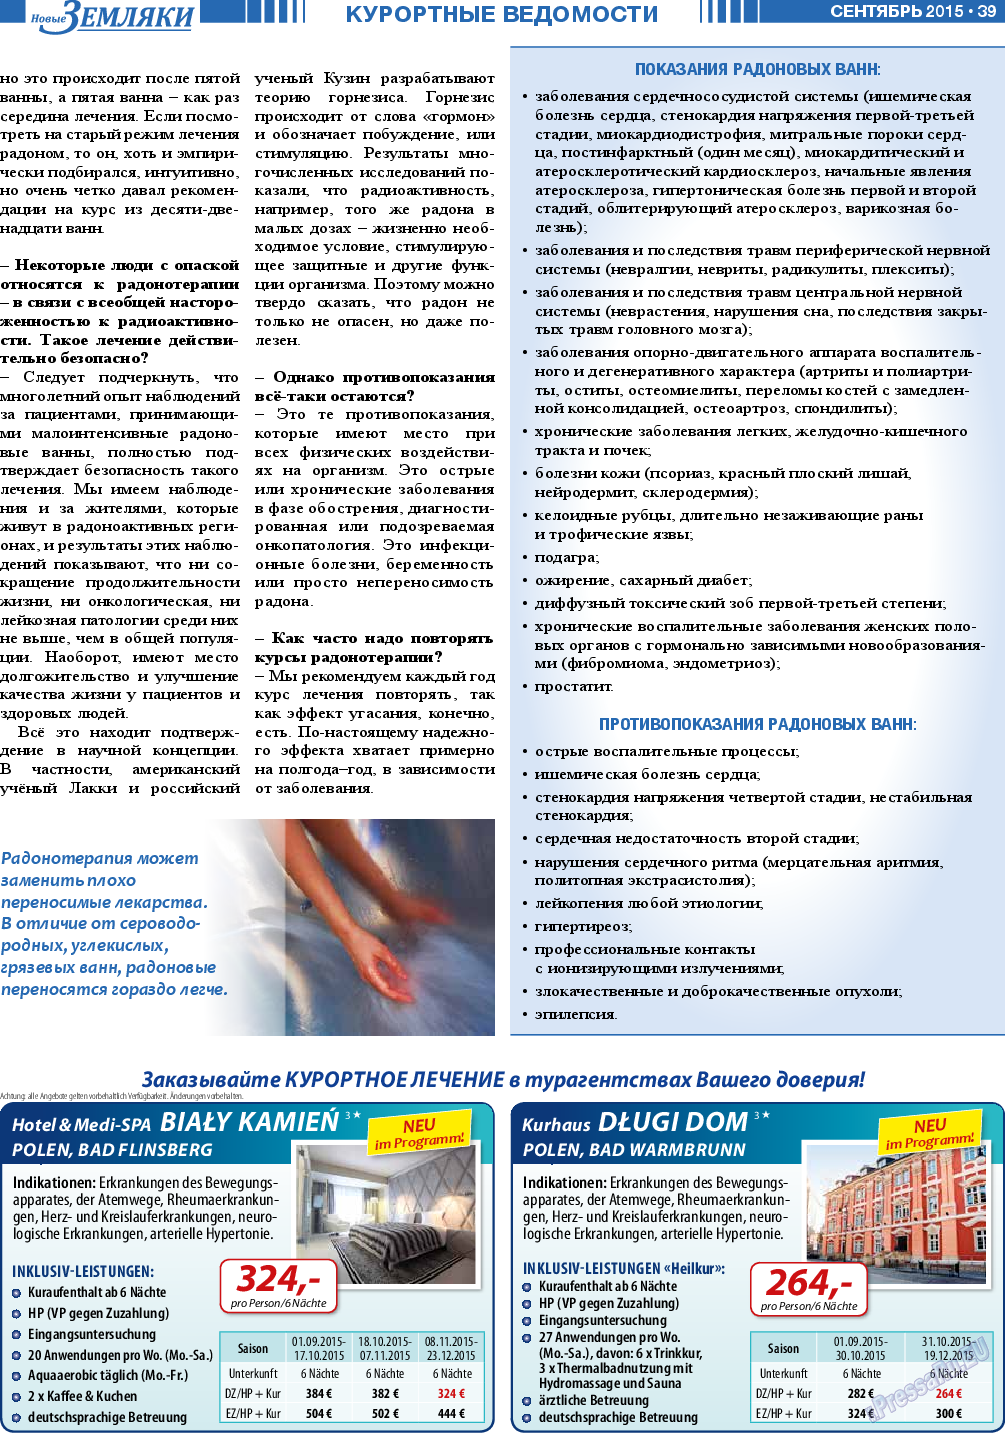 Новые Земляки (газета). 2015 год, номер 9, стр. 39